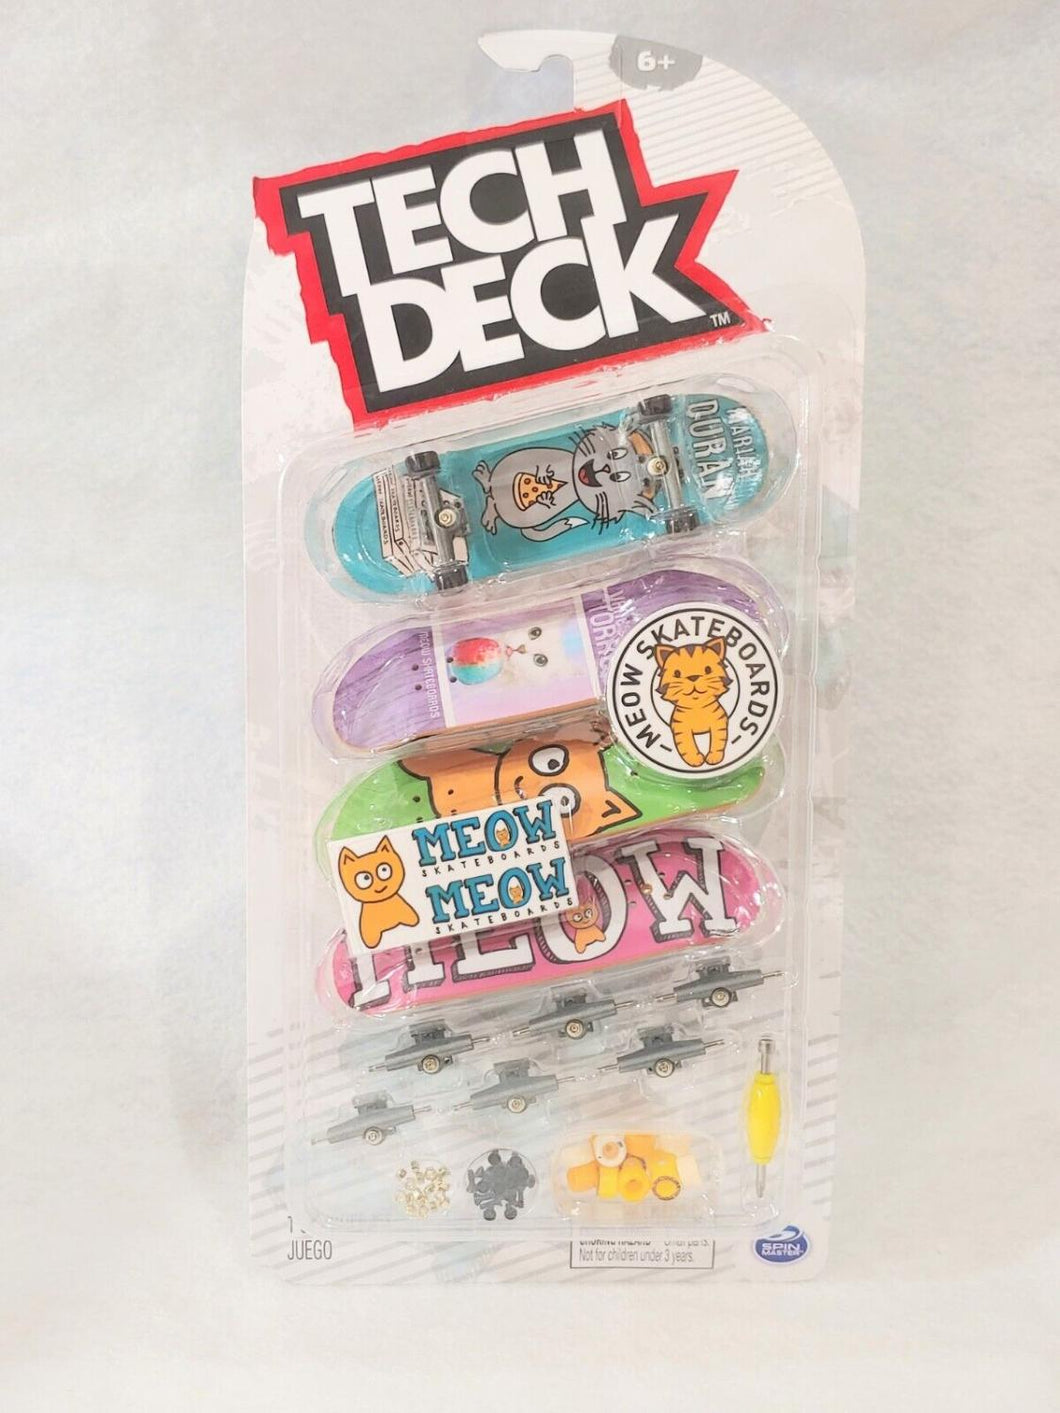 Tech Deck Ultra DLX 4-pack